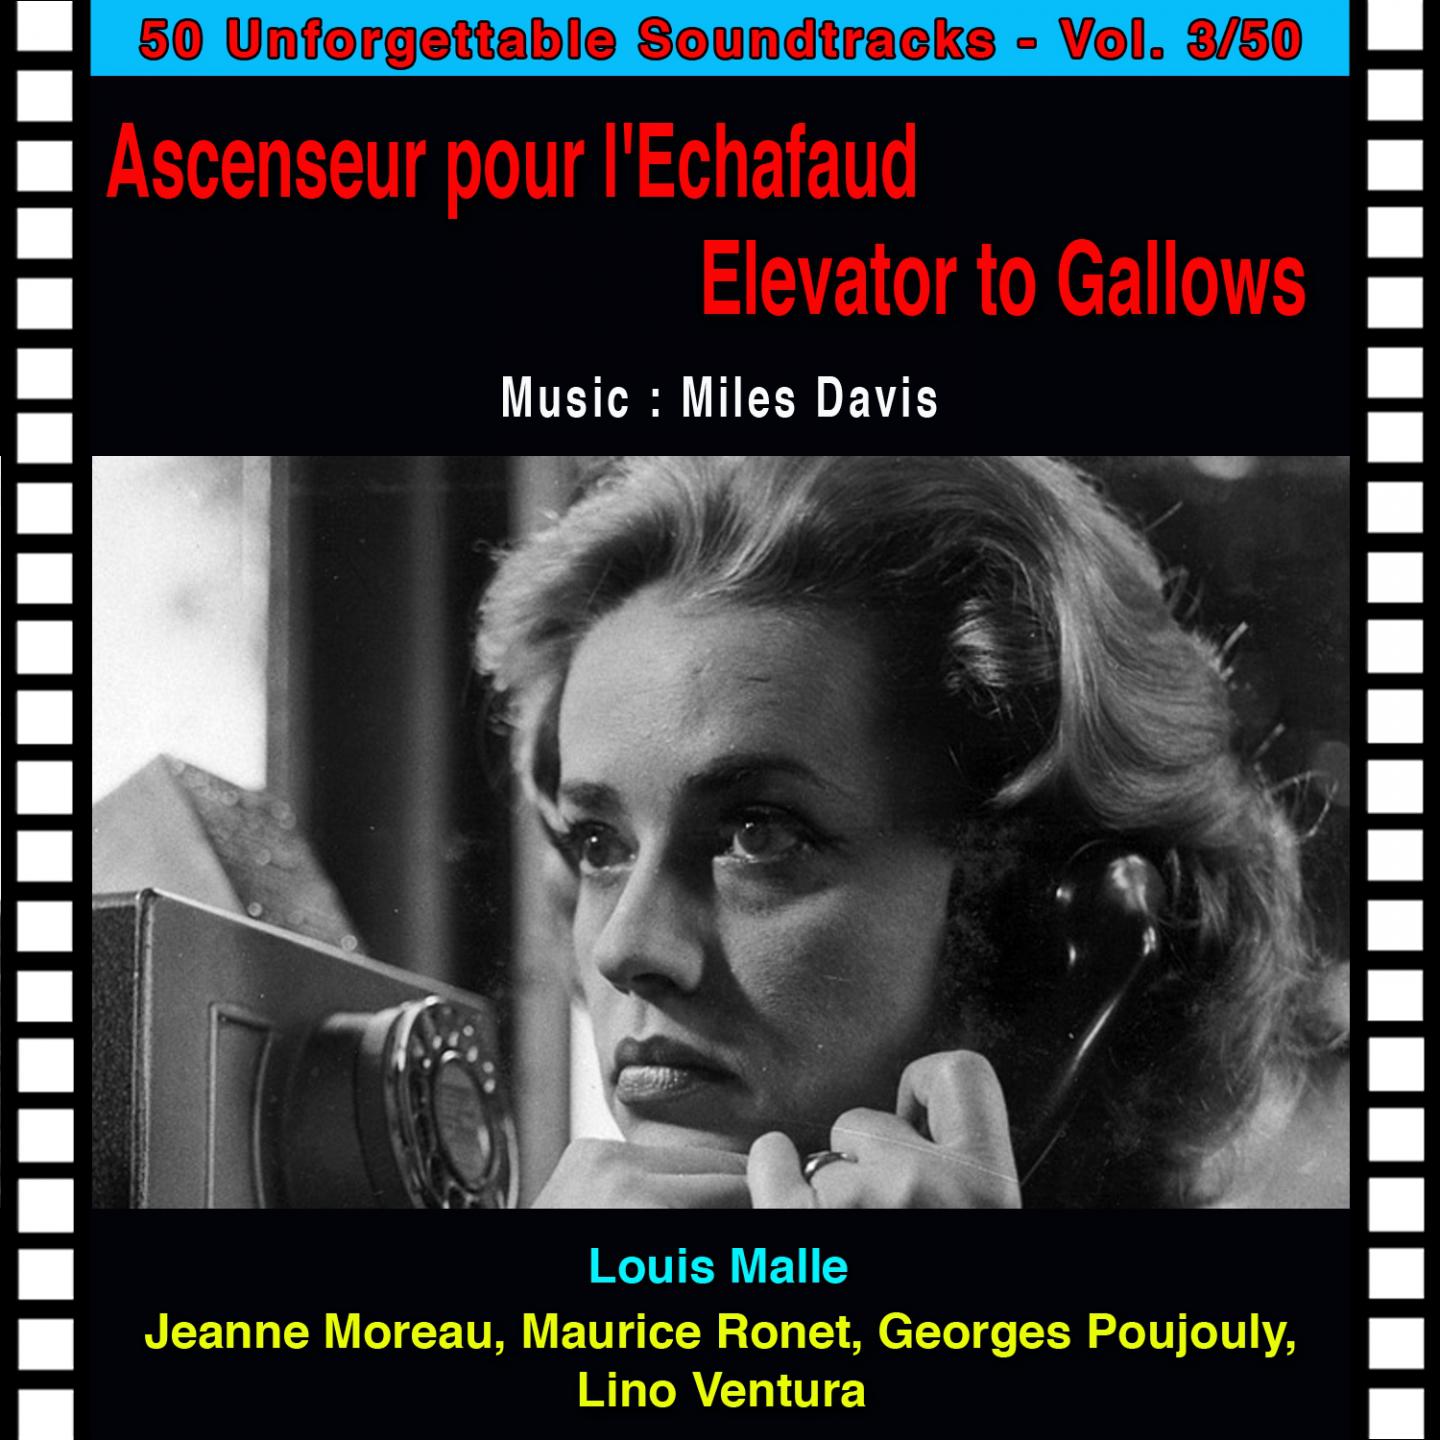 Julien dans l' ascenseur Ascenseur pour l'e chafaud  elevator to gallows